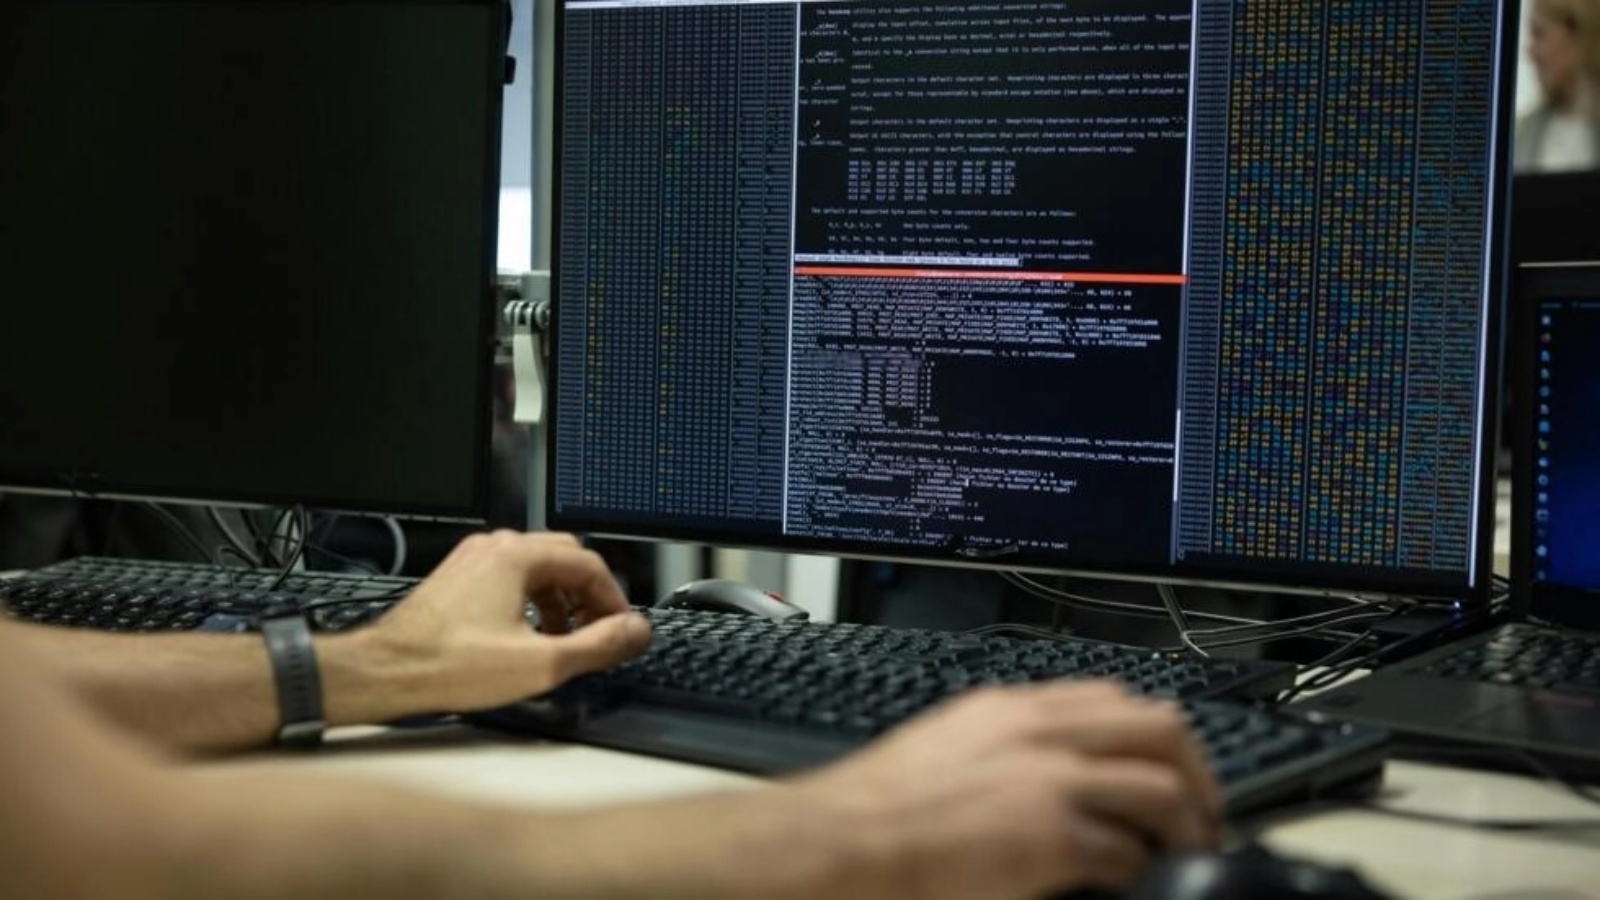 عنصر تابع للوكالة الوطنية الفرنسية للأمن السيبراني يتحقق من البيانات الموجودة على جهاز كمبيوتر